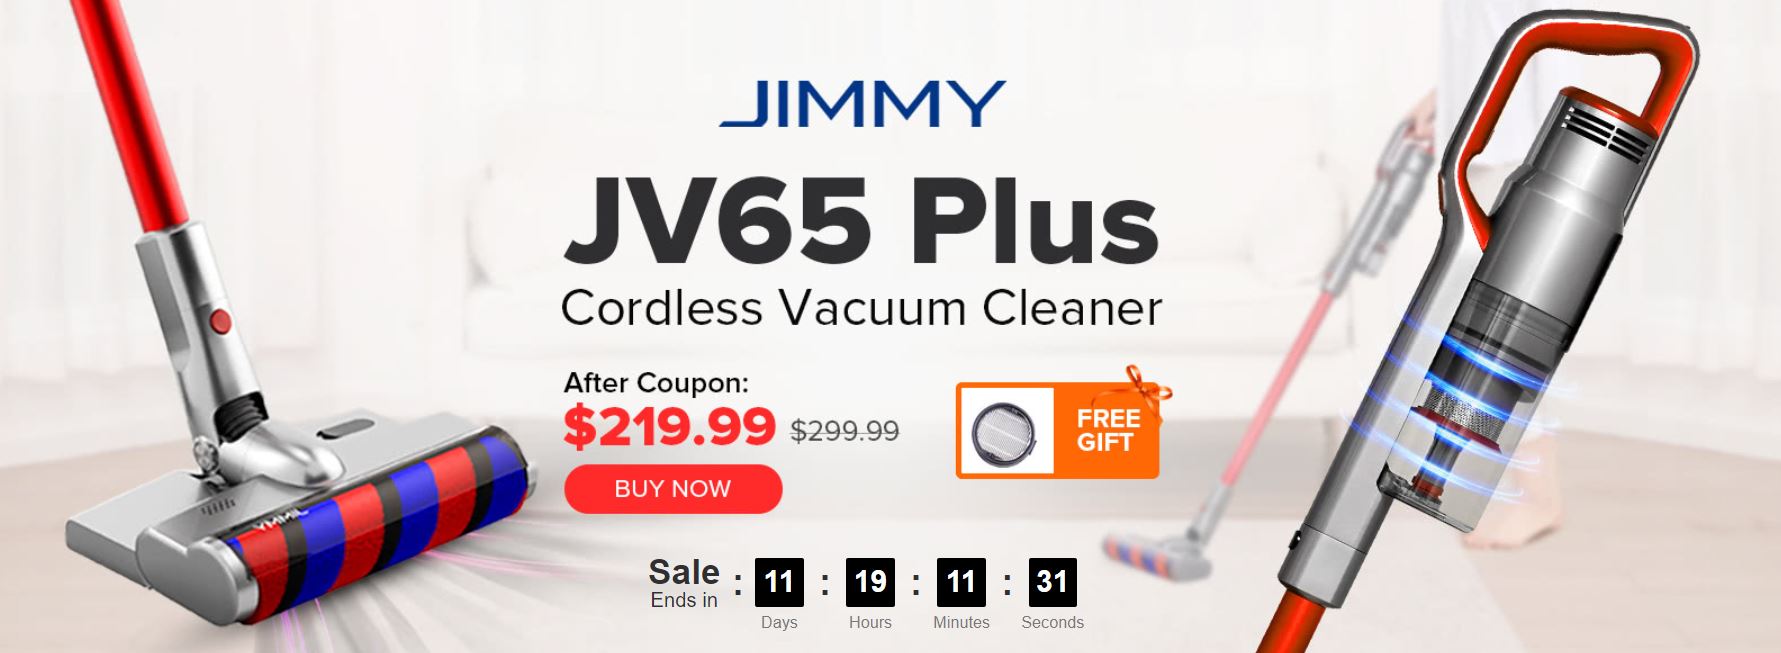 Jimmy JV65 Plus - premiera odkurzacza ręcznego z funkcją mopowania - promocja